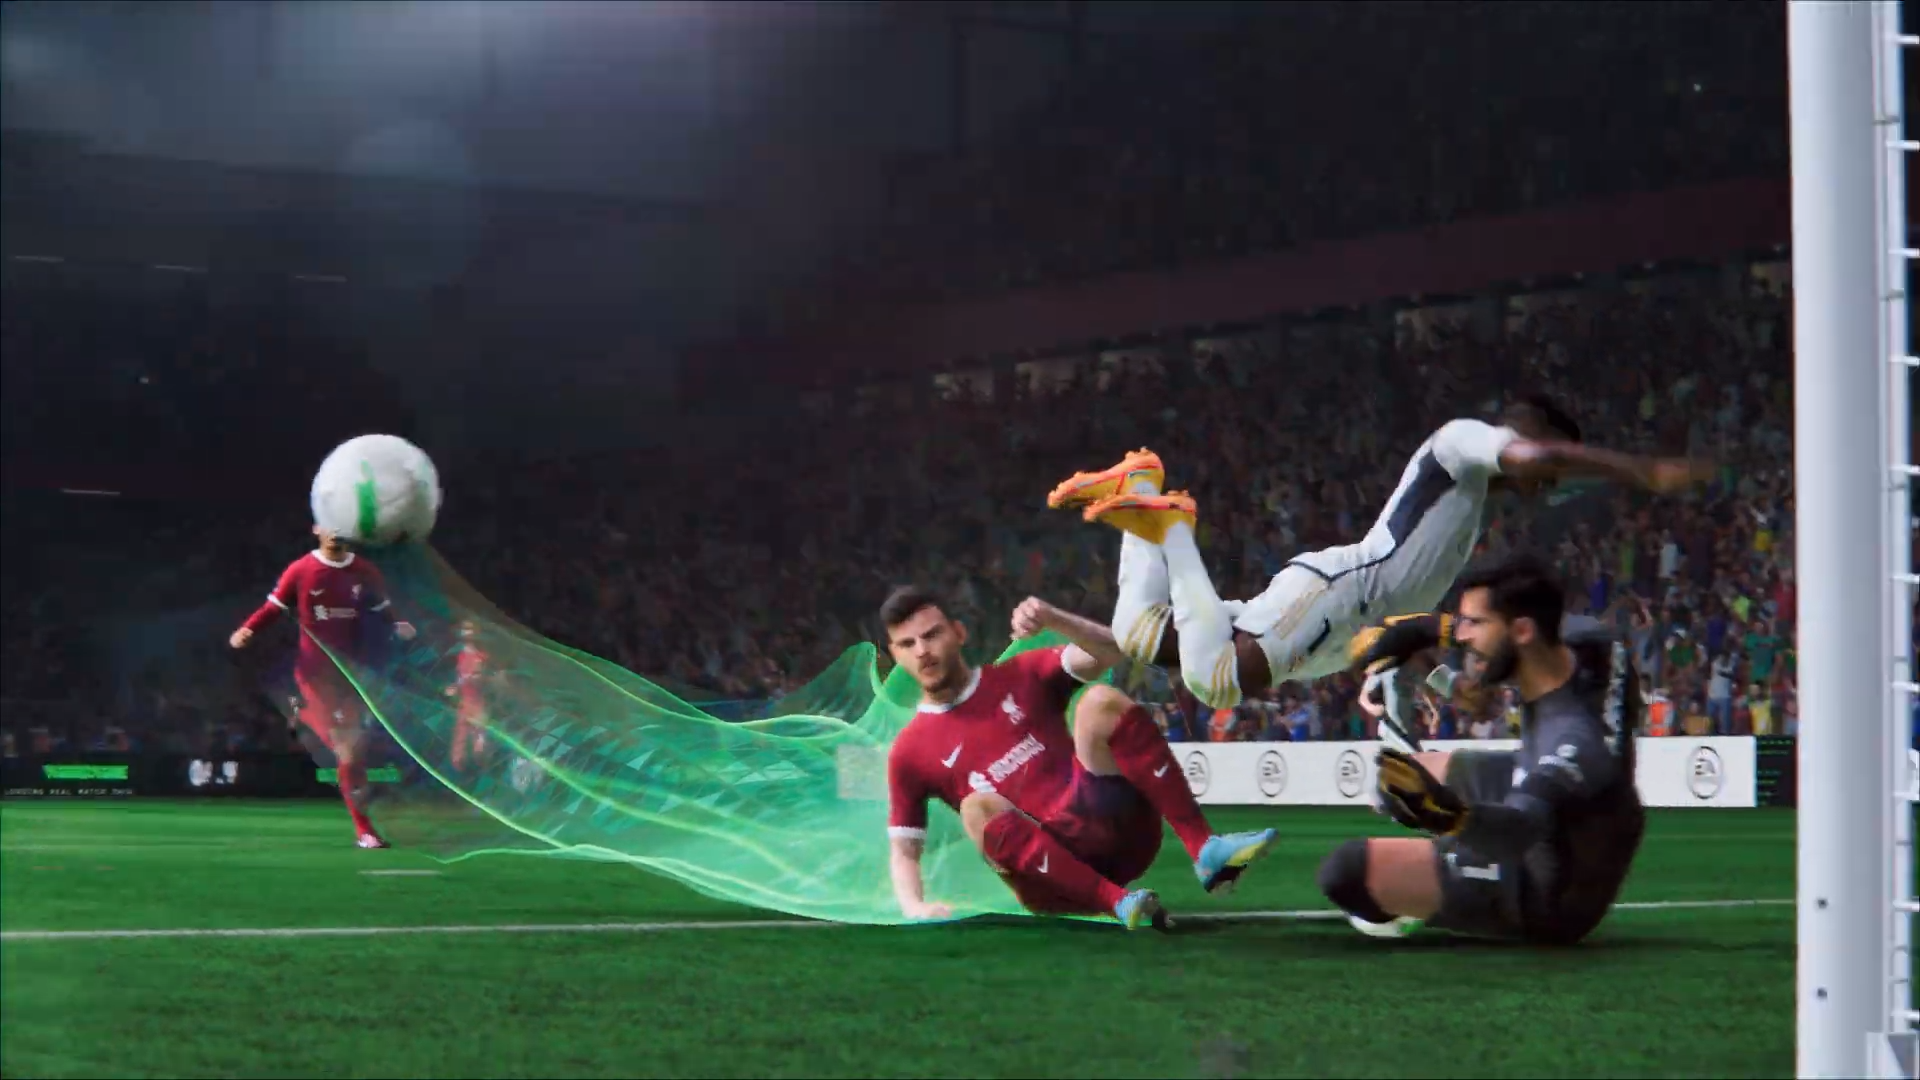 EA SPORTS FC 24: O popular simulador de futebol já está disponível!